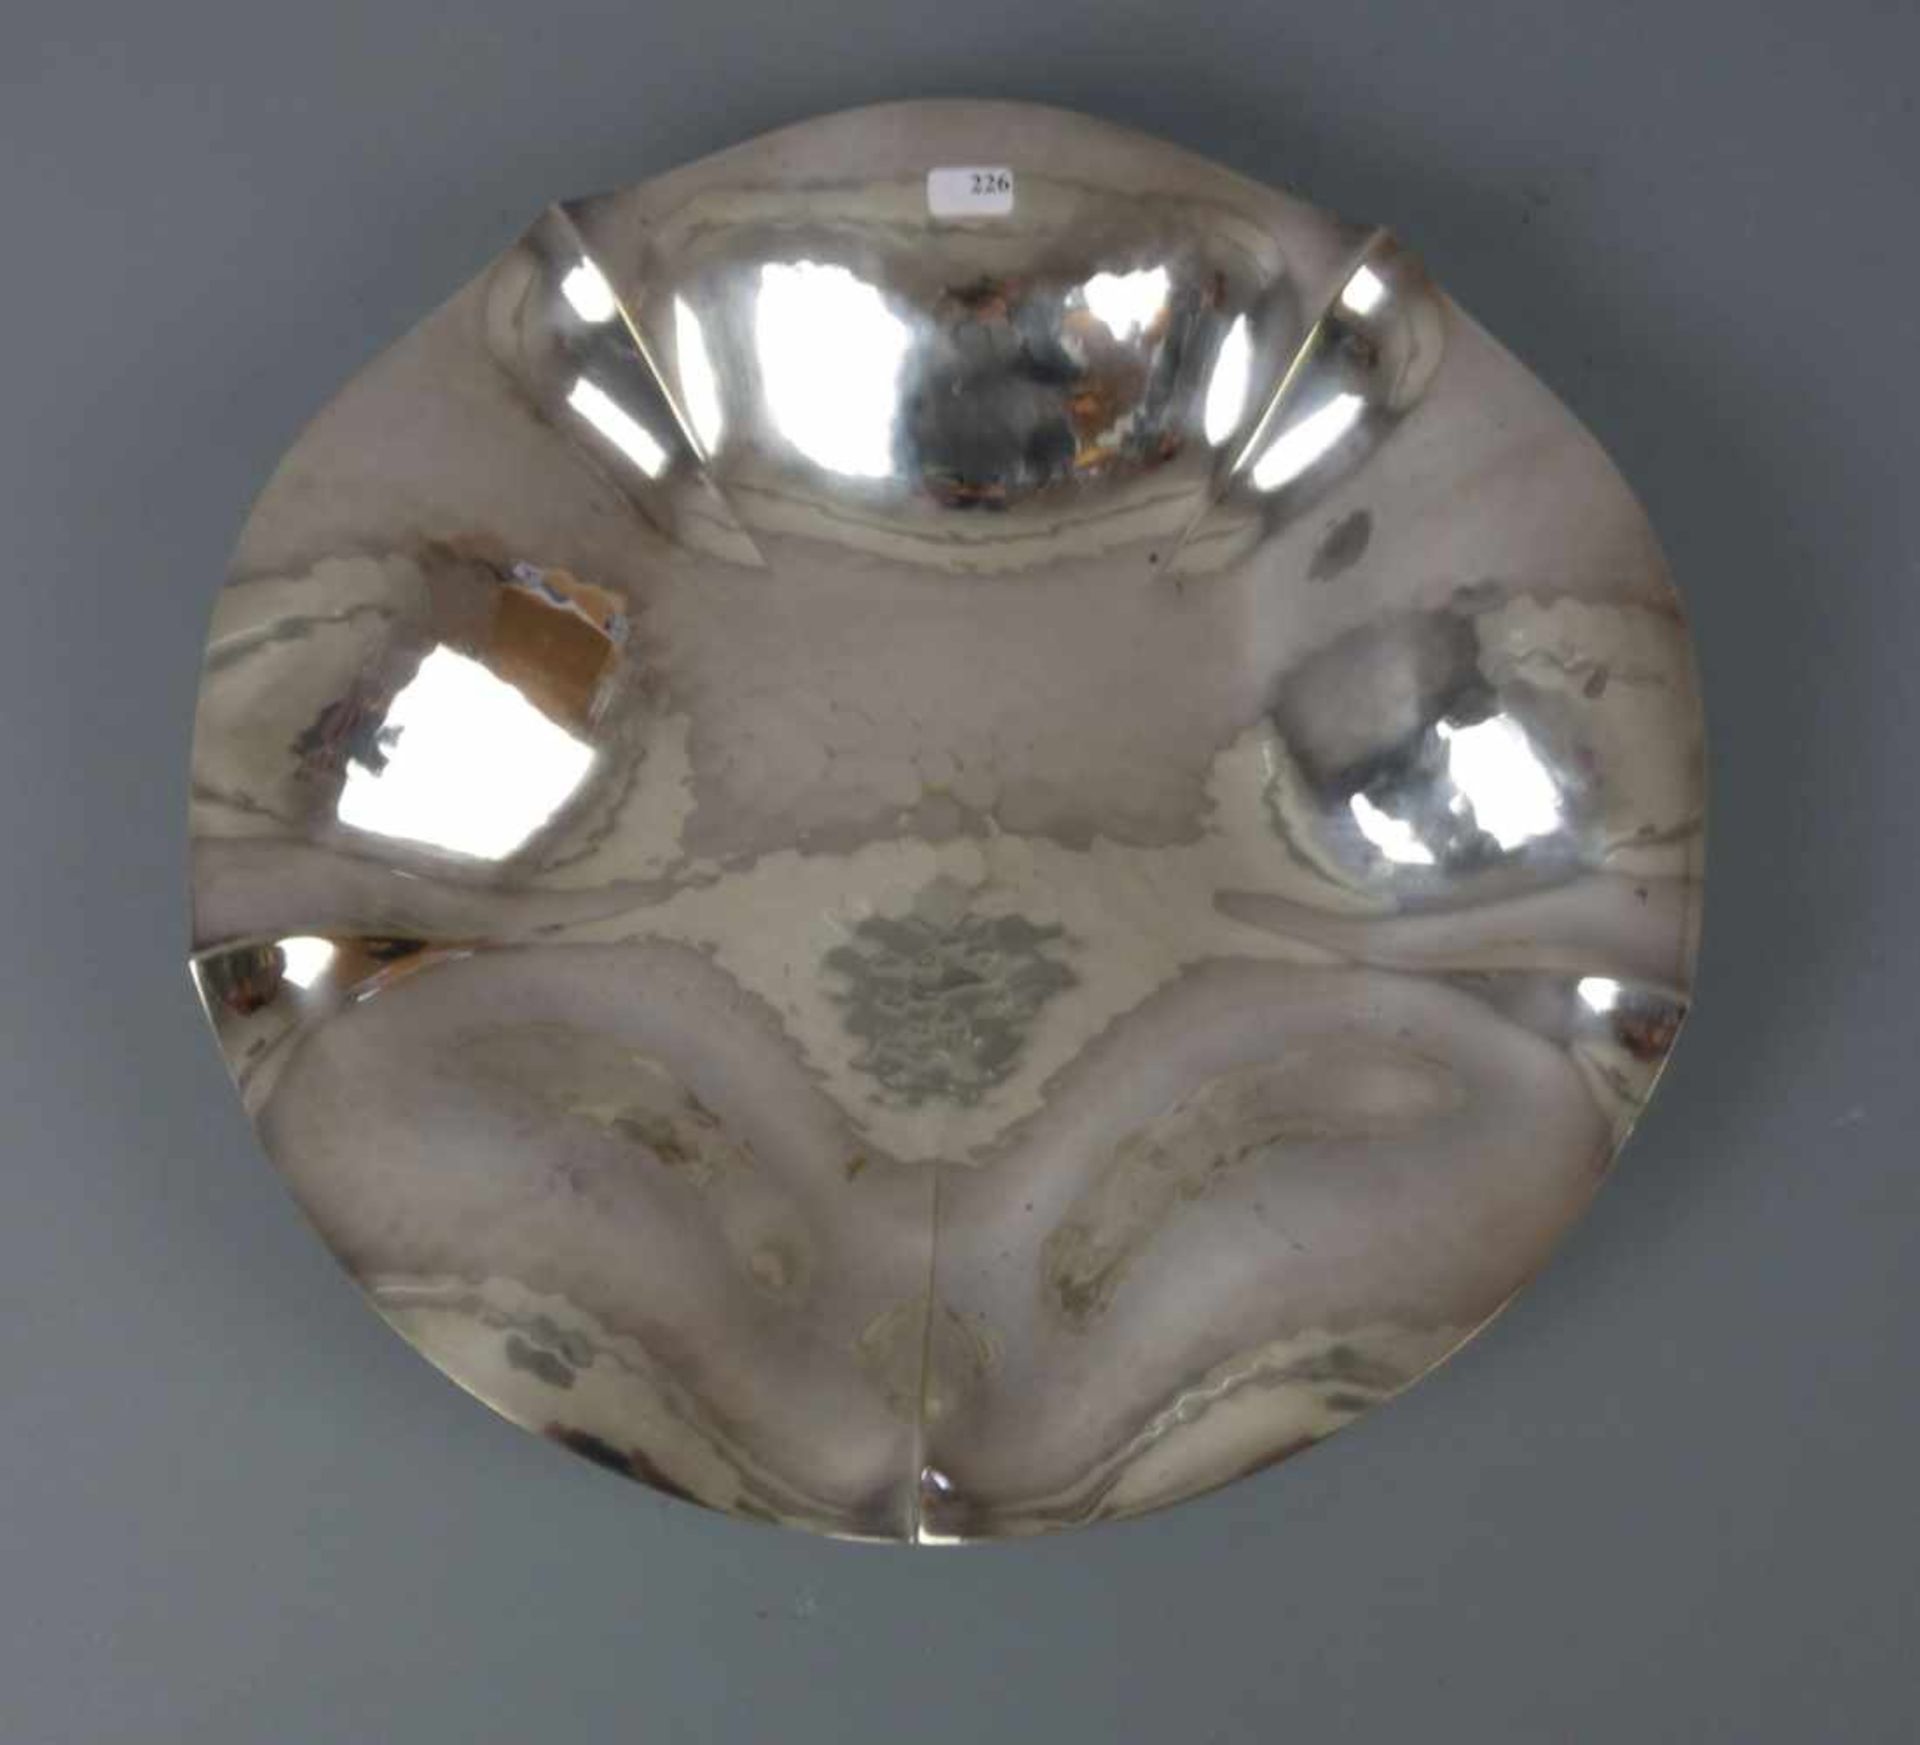 ART DÉCO - SCHALE / plated bowl, versilbertes Metall, WMF - Württembergische Metallwarenfabrik,